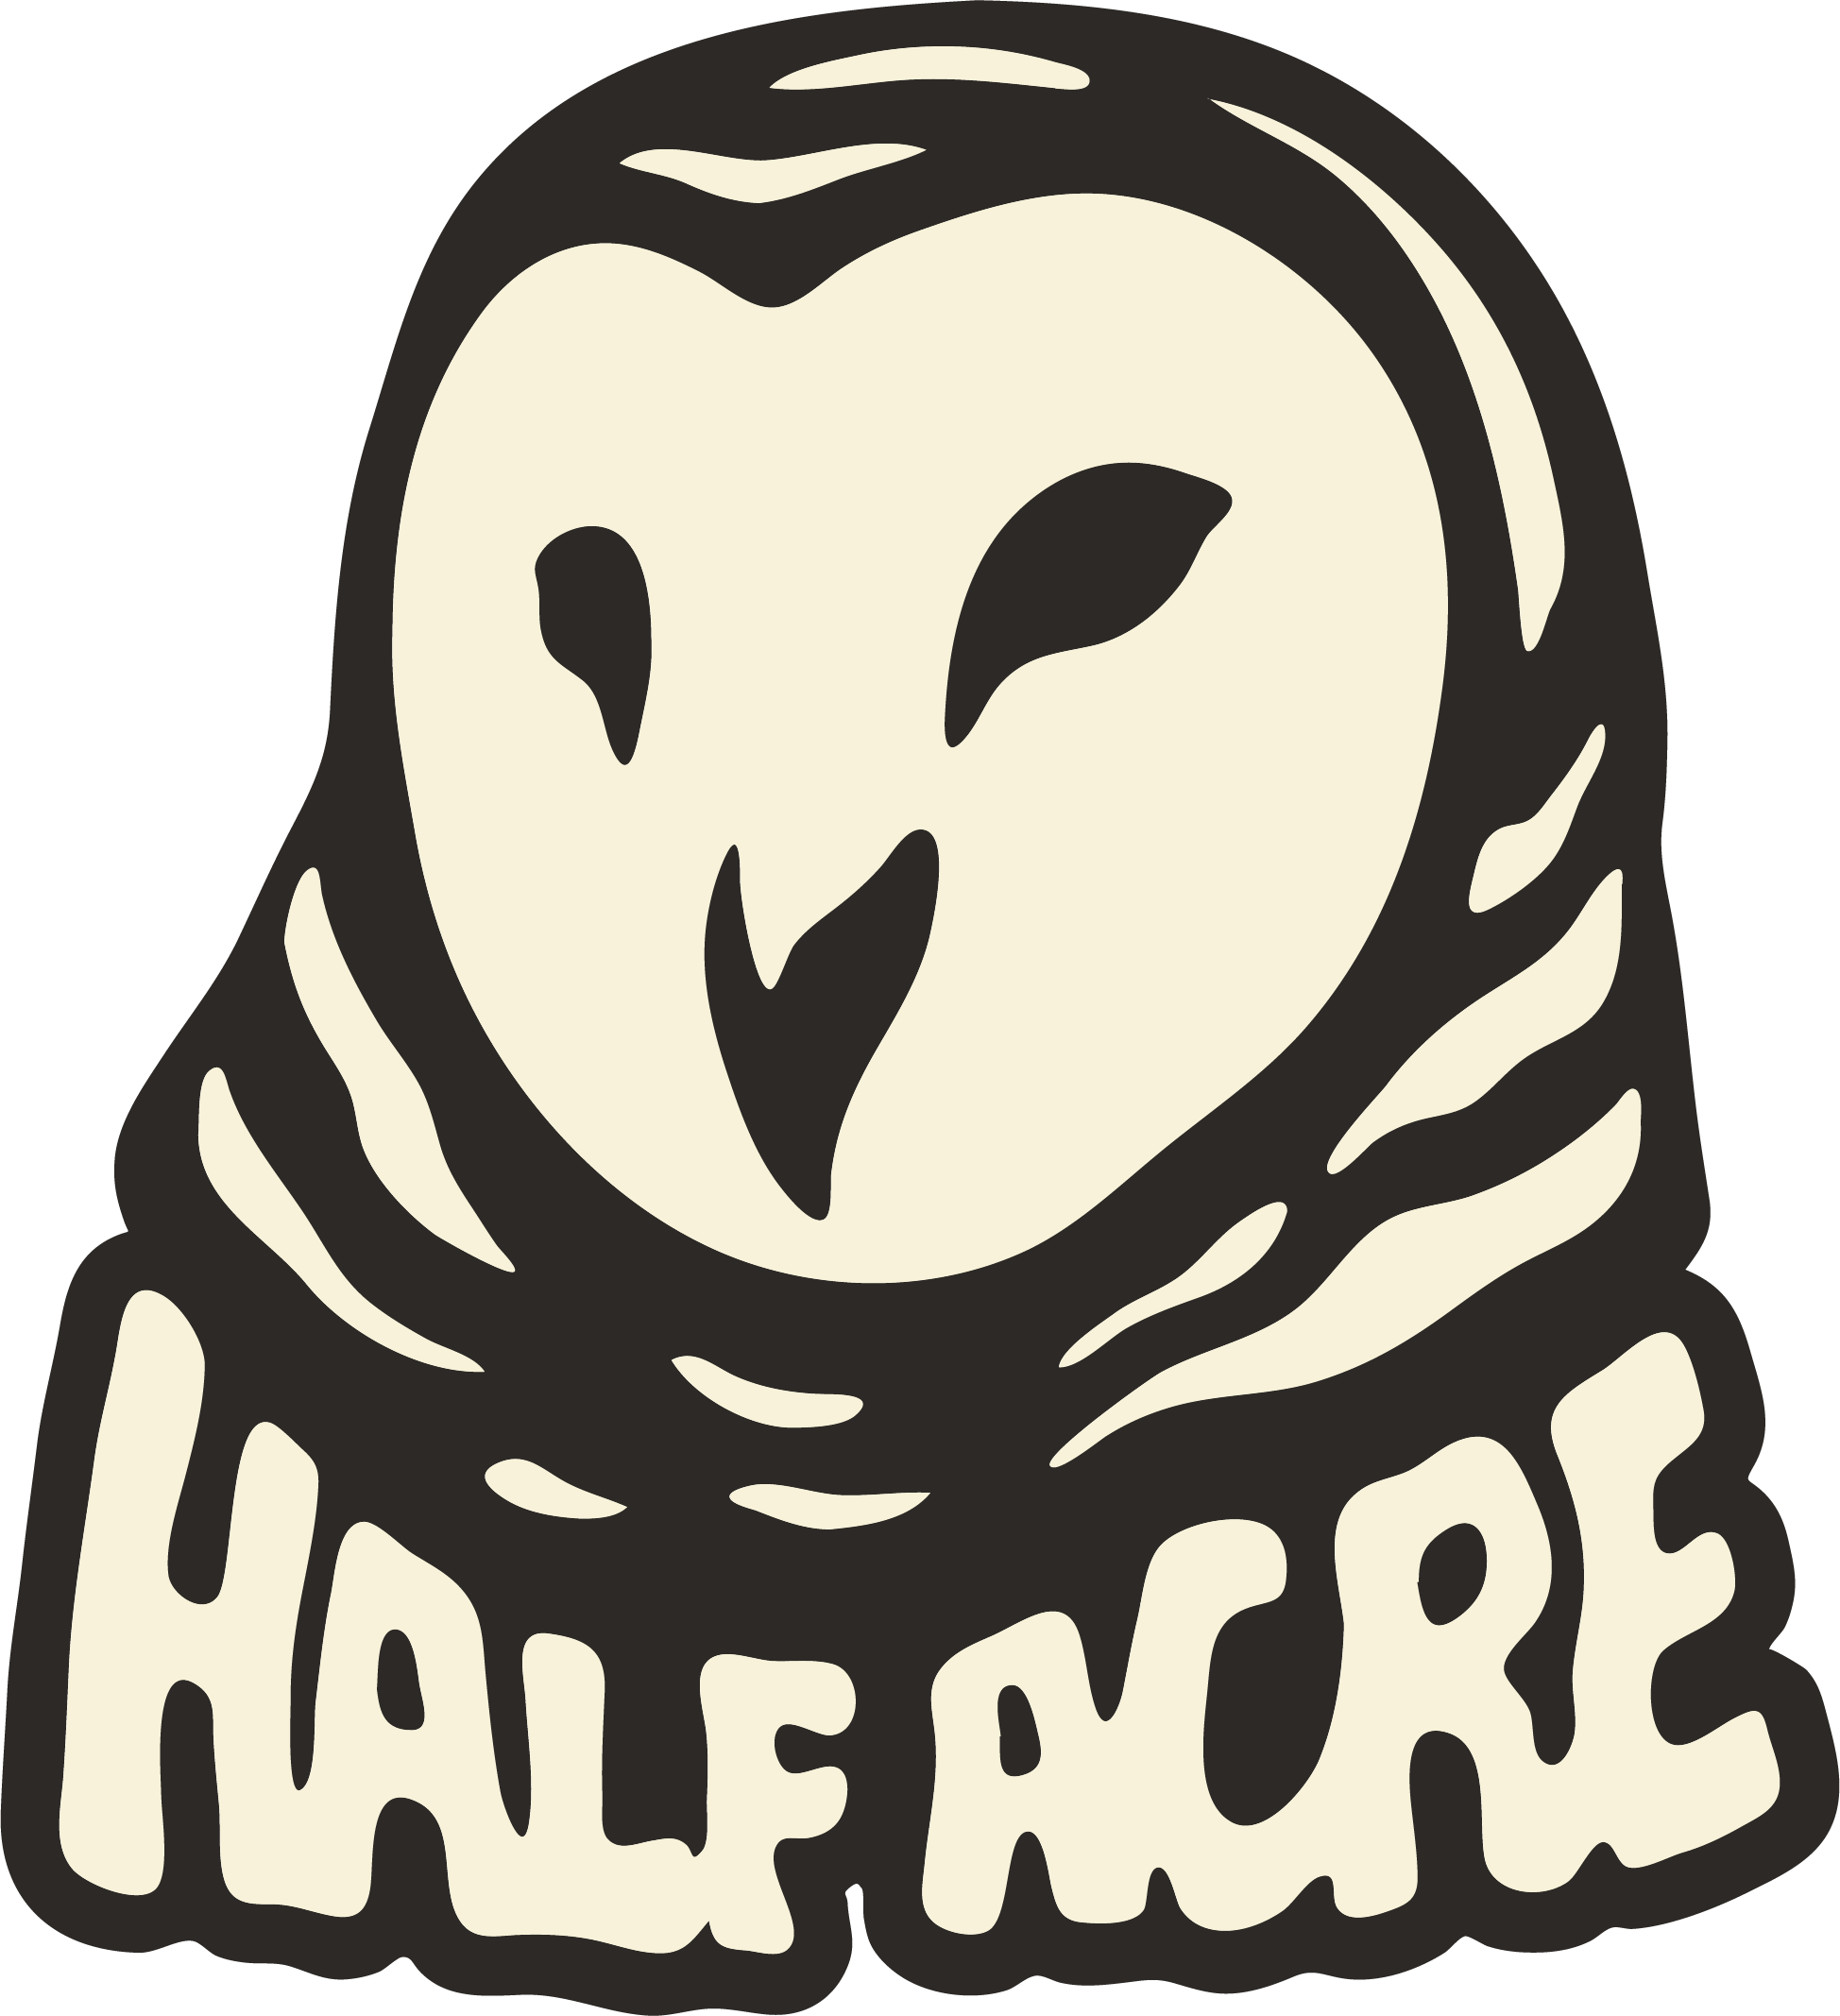 (c) Halfacrebeer.com